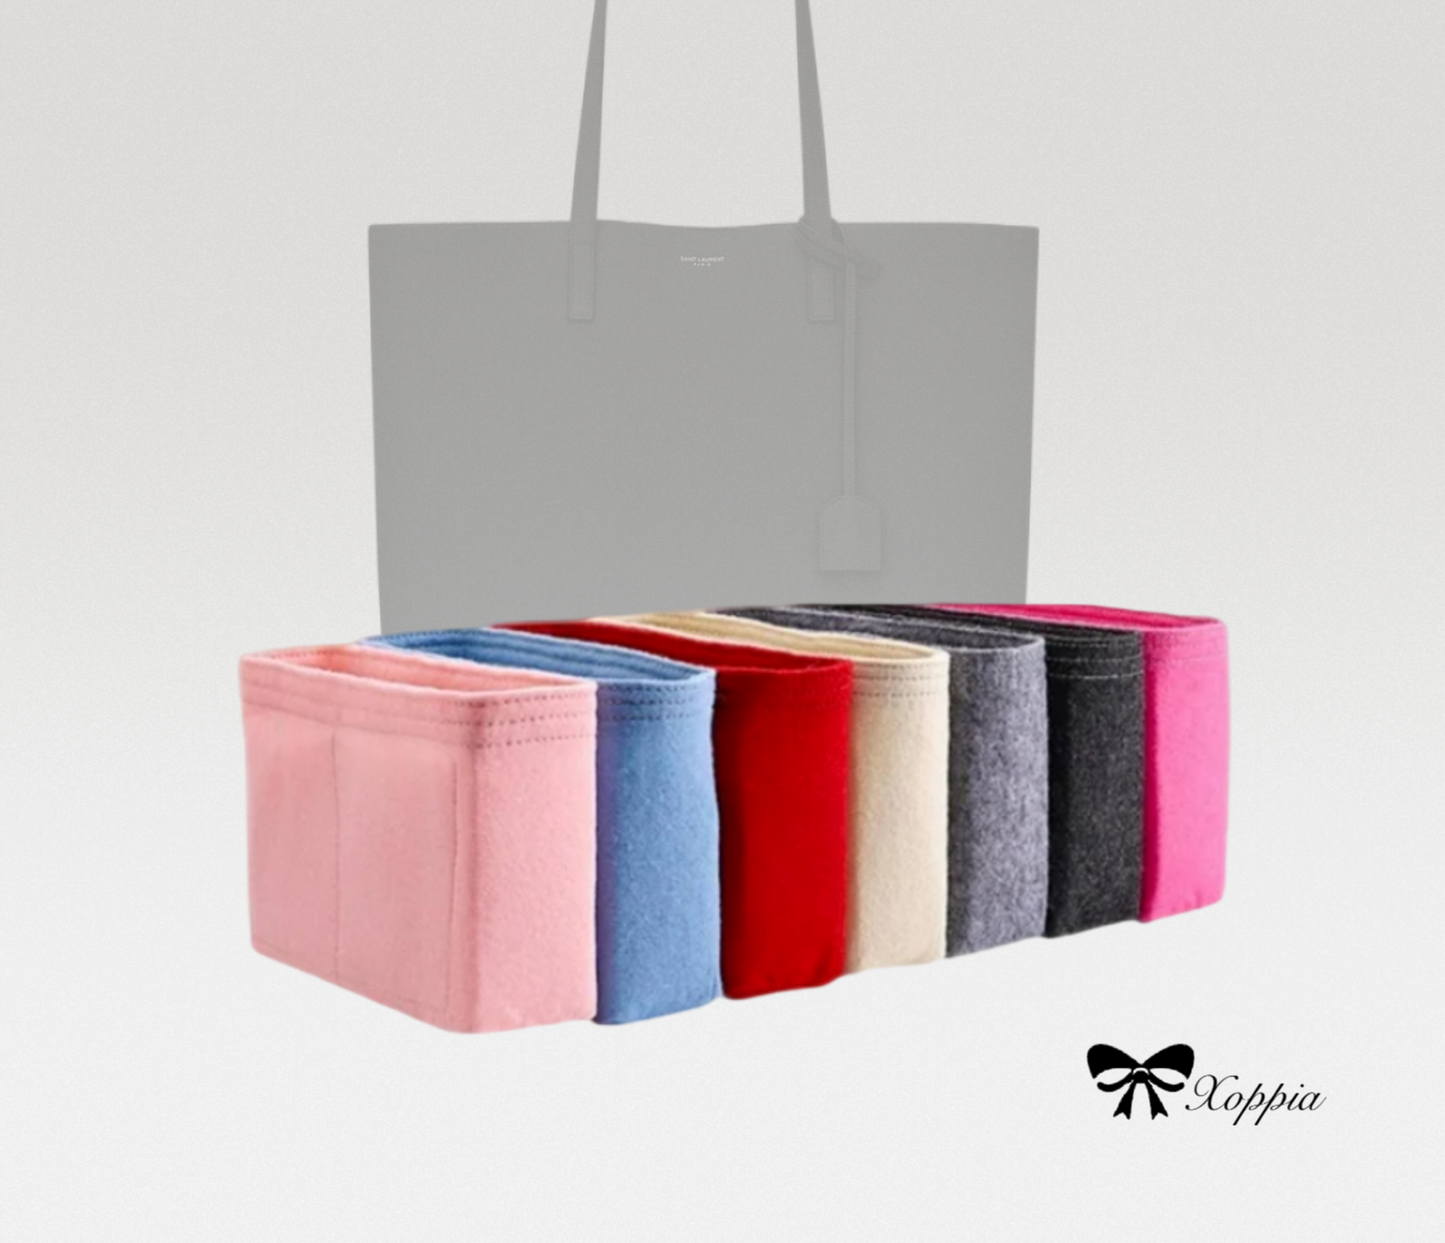 Bag Organizer For SHOPPING N/S | Bag Insert For Tote Bag | Felt Bag Organizer For Handbag Bag